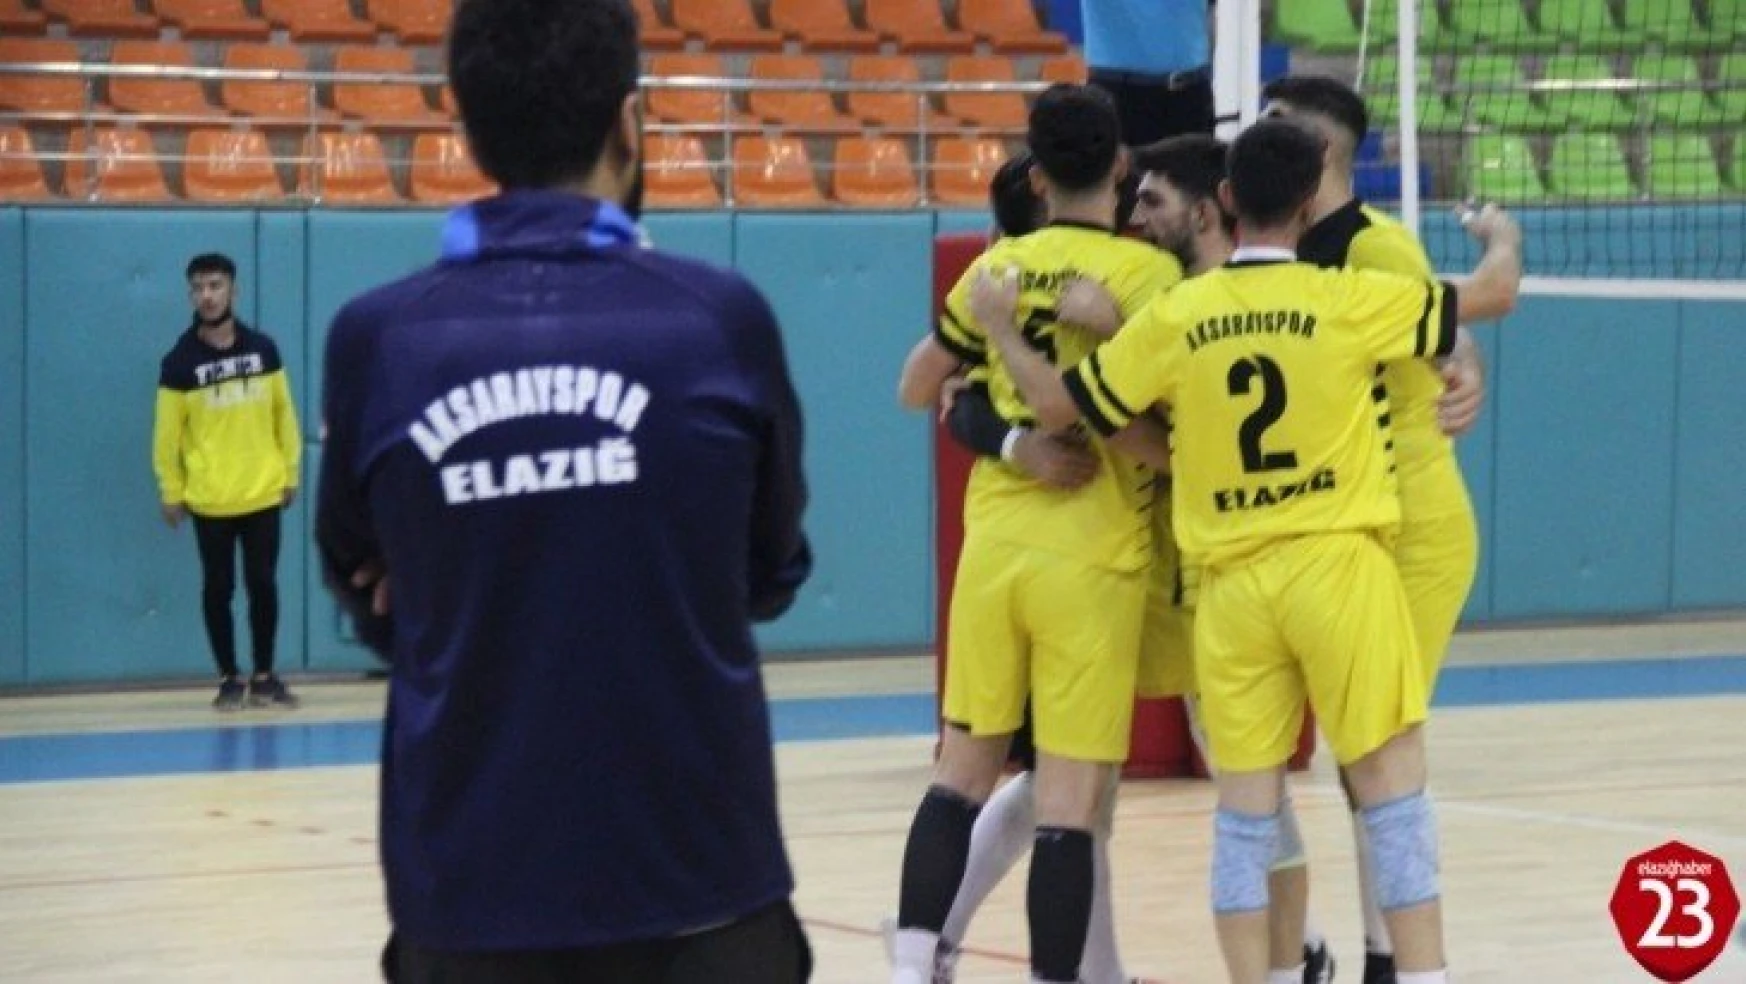 Voleybol 2. Lig: Elazığ Aksaray Gençlik: 0 - Seyhan Belediye: 3